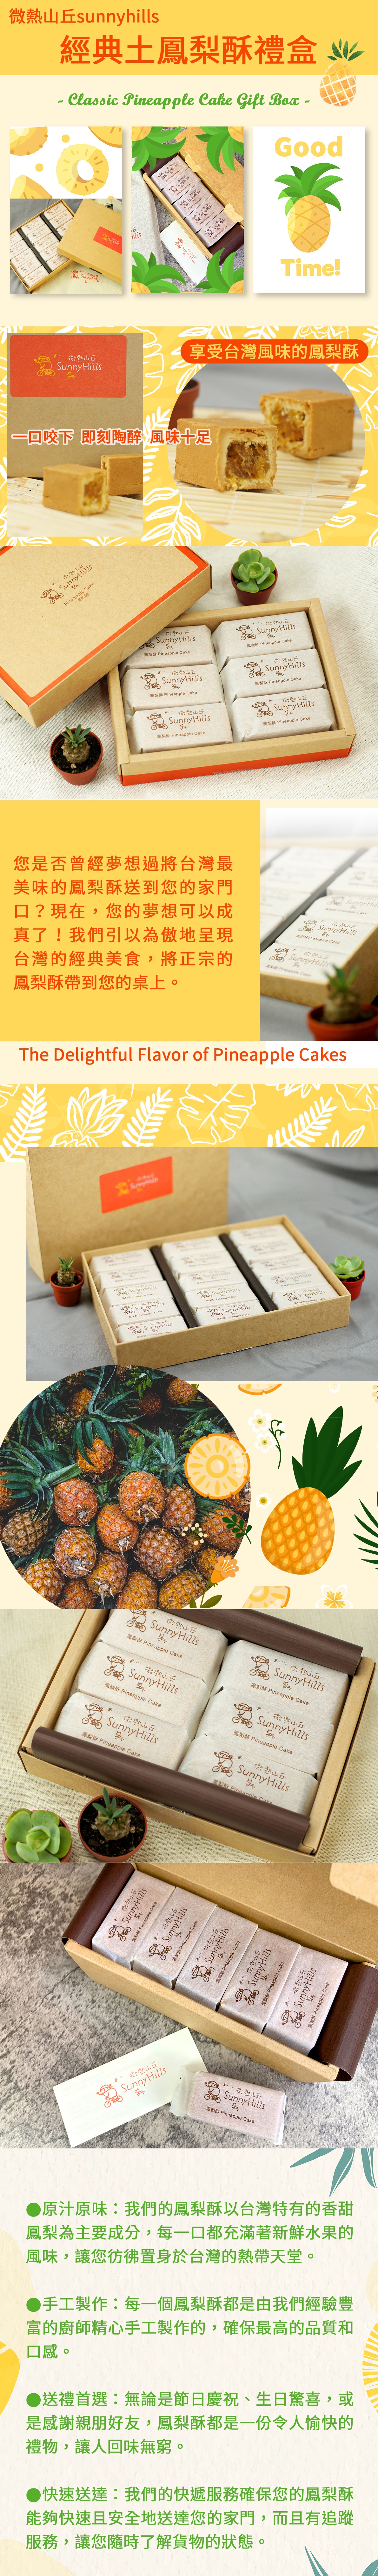 【微熱山丘】酸甜土鳳梨酥(6入/盒) 附精美環保提袋 在地土鳳梨新鮮製作